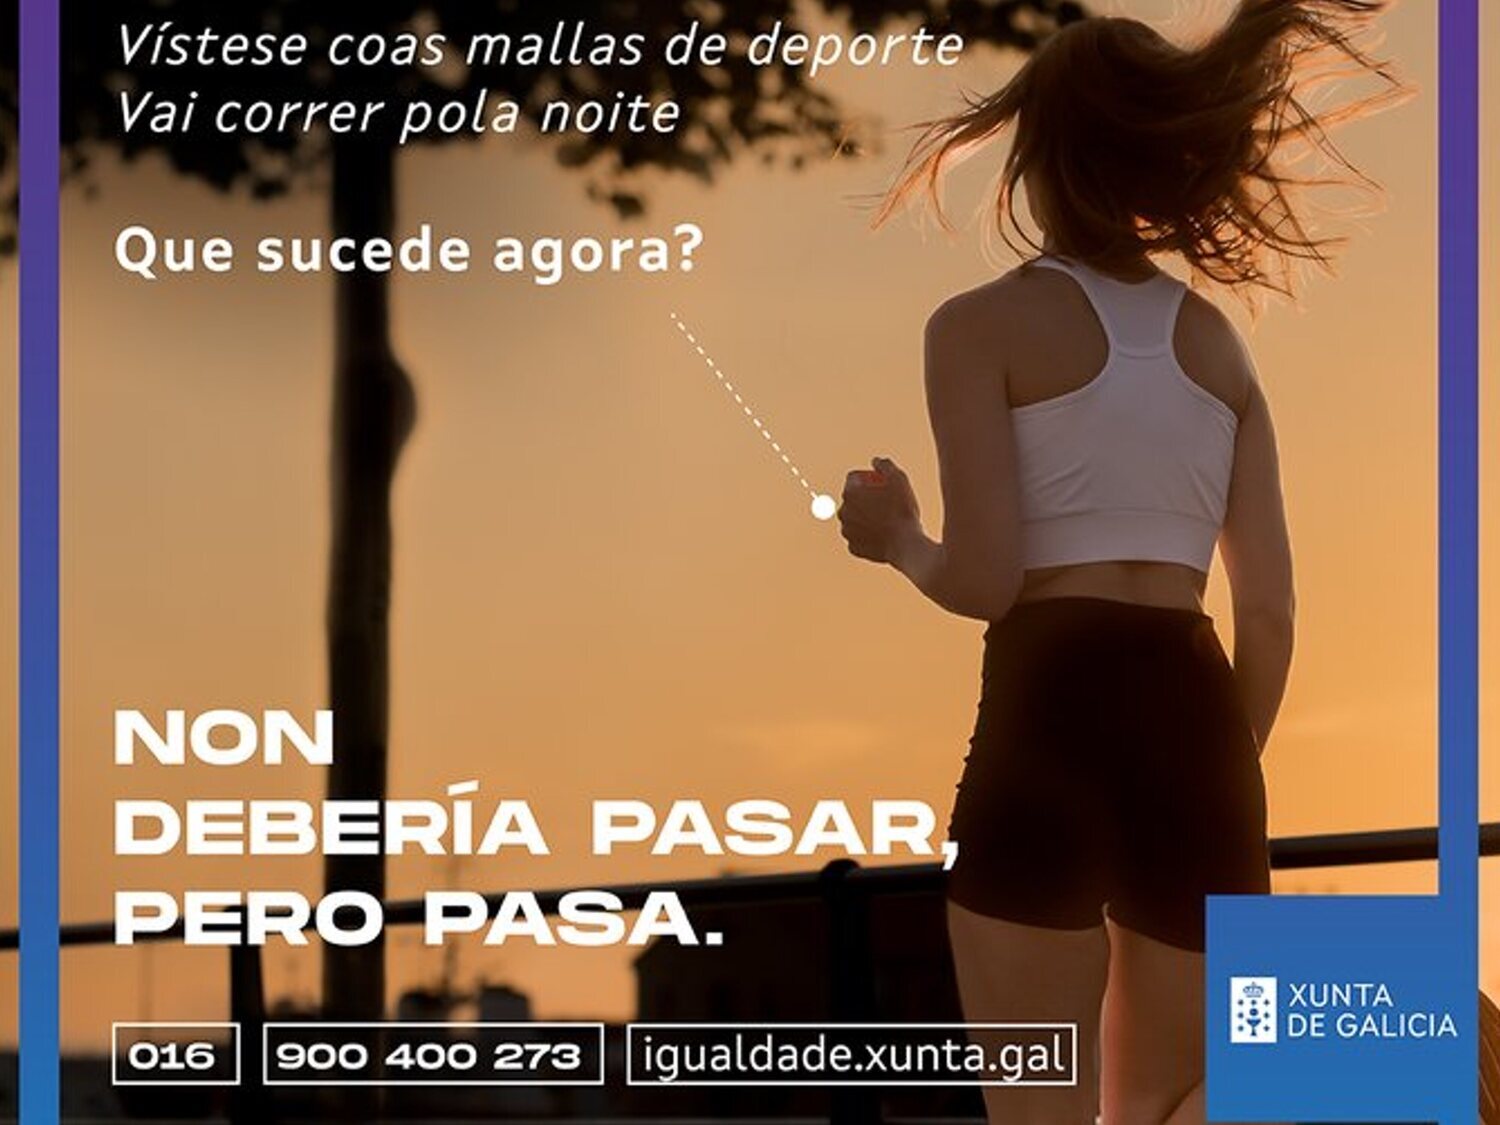 La Xunta de Galicia promueve una campaña machista contra la violencia de género que criminaliza a las víctimas